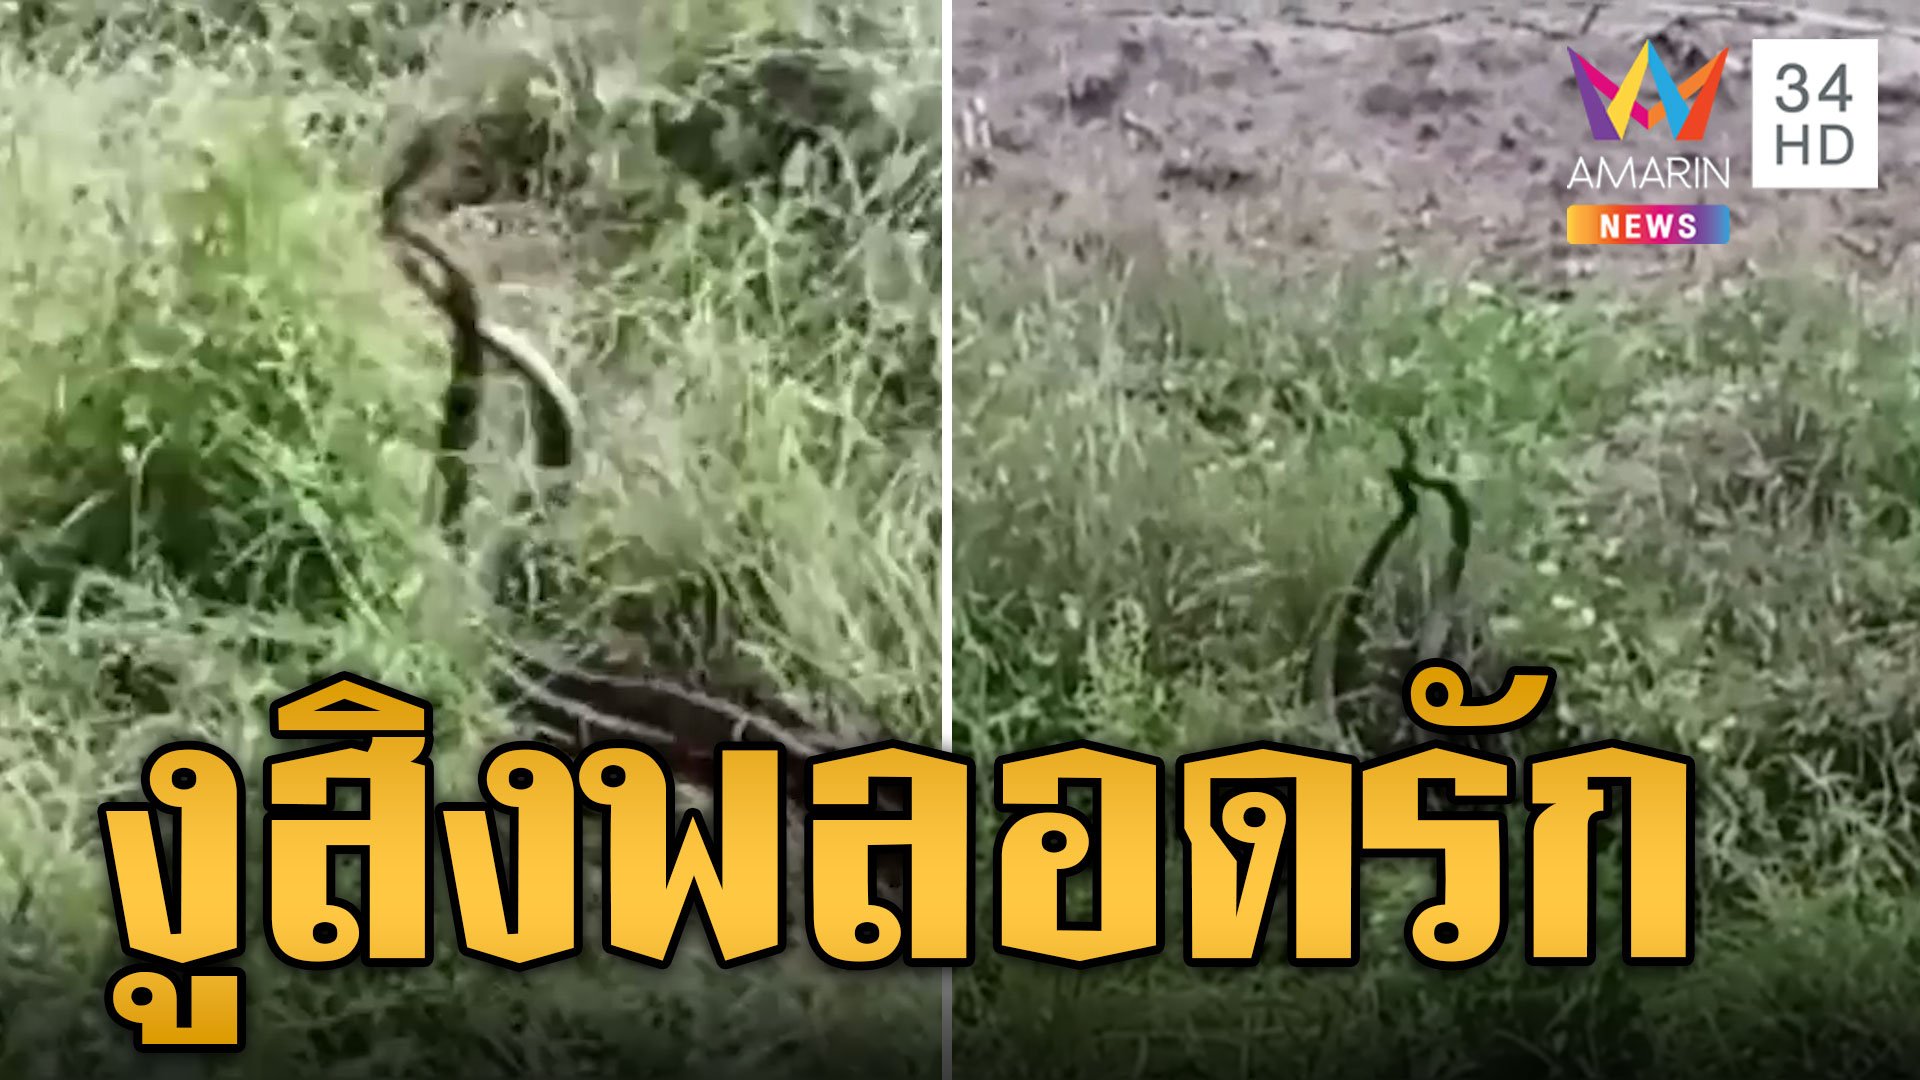 งูสิงพลอดรัก กู้ภัยกลัวบาปไม่กล้าจับ | ข่าวอรุณอมรินทร์ | 25 พ.ค. 67 | AMARIN TVHD34